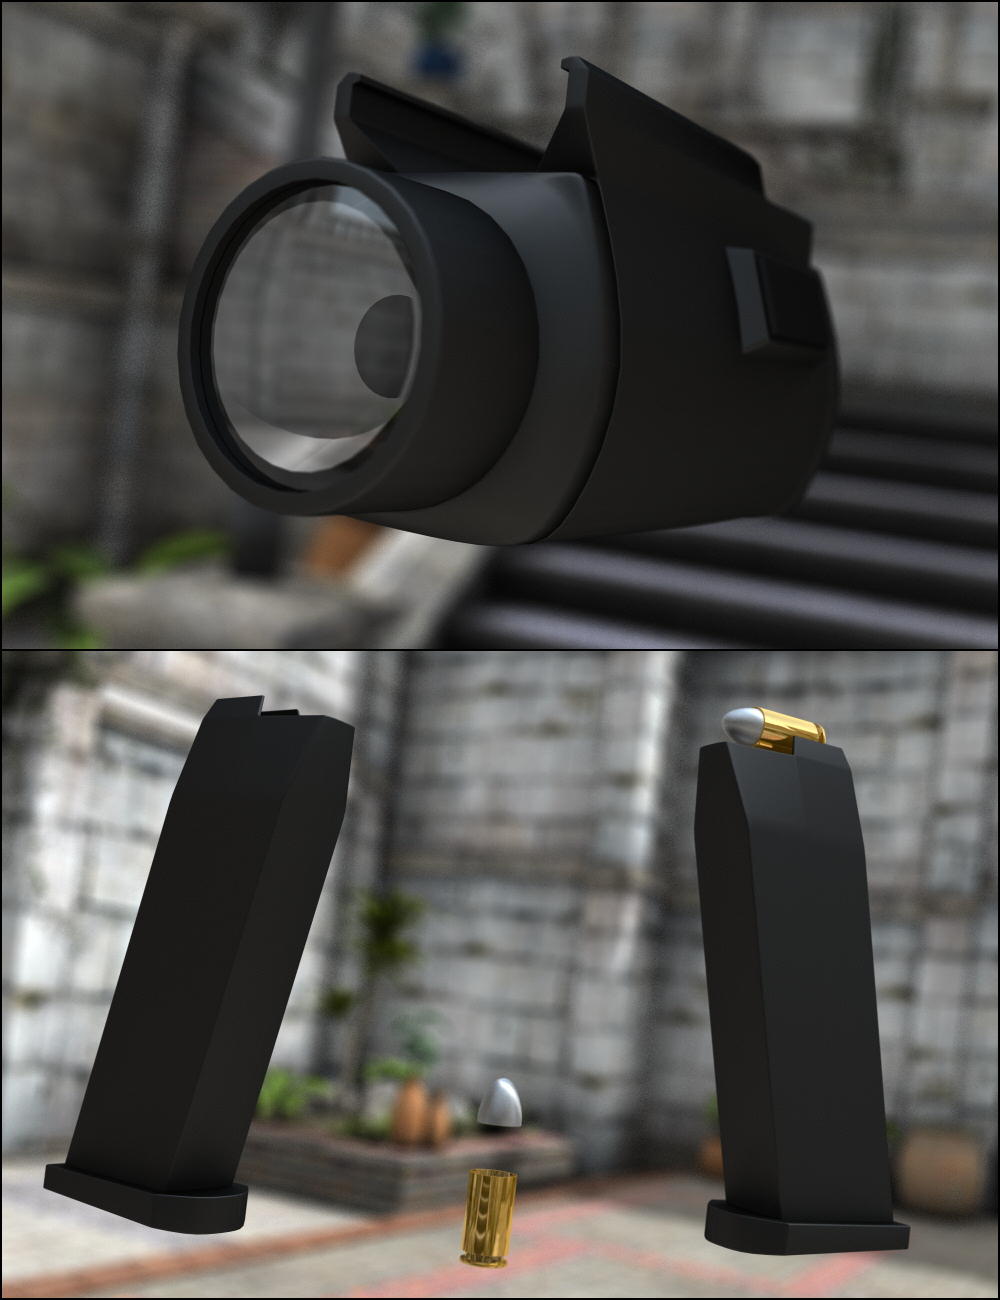 MMX92 9MM Pistol by: Mattymanx, 3D Models by Daz 3D